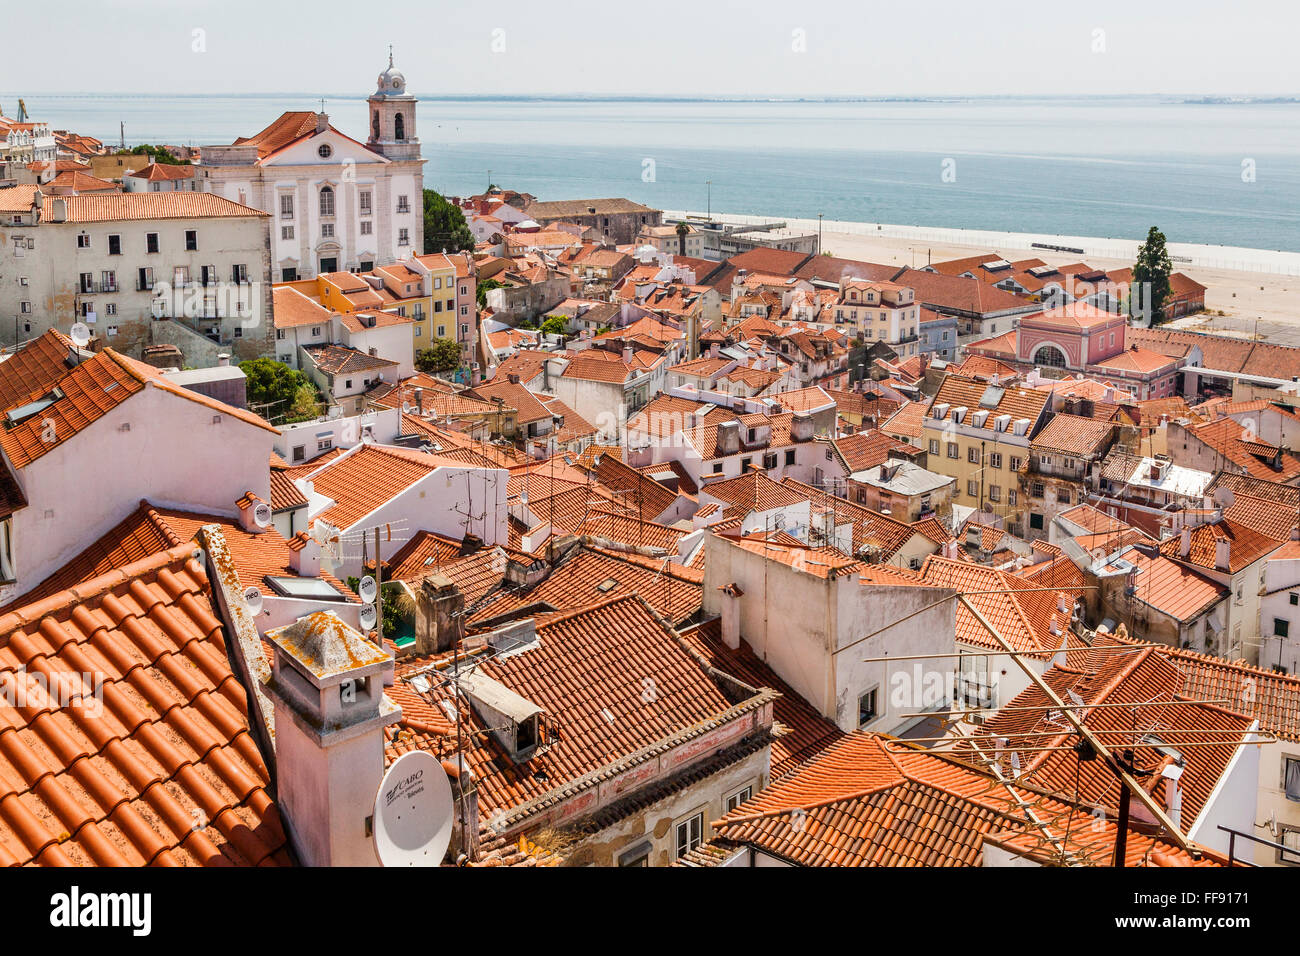 Portugal, Lisbonne, vue de Miradouro das Portas do Sol sur le Tage et les toits du quartier de Lisbonne d'Alfalma Banque D'Images